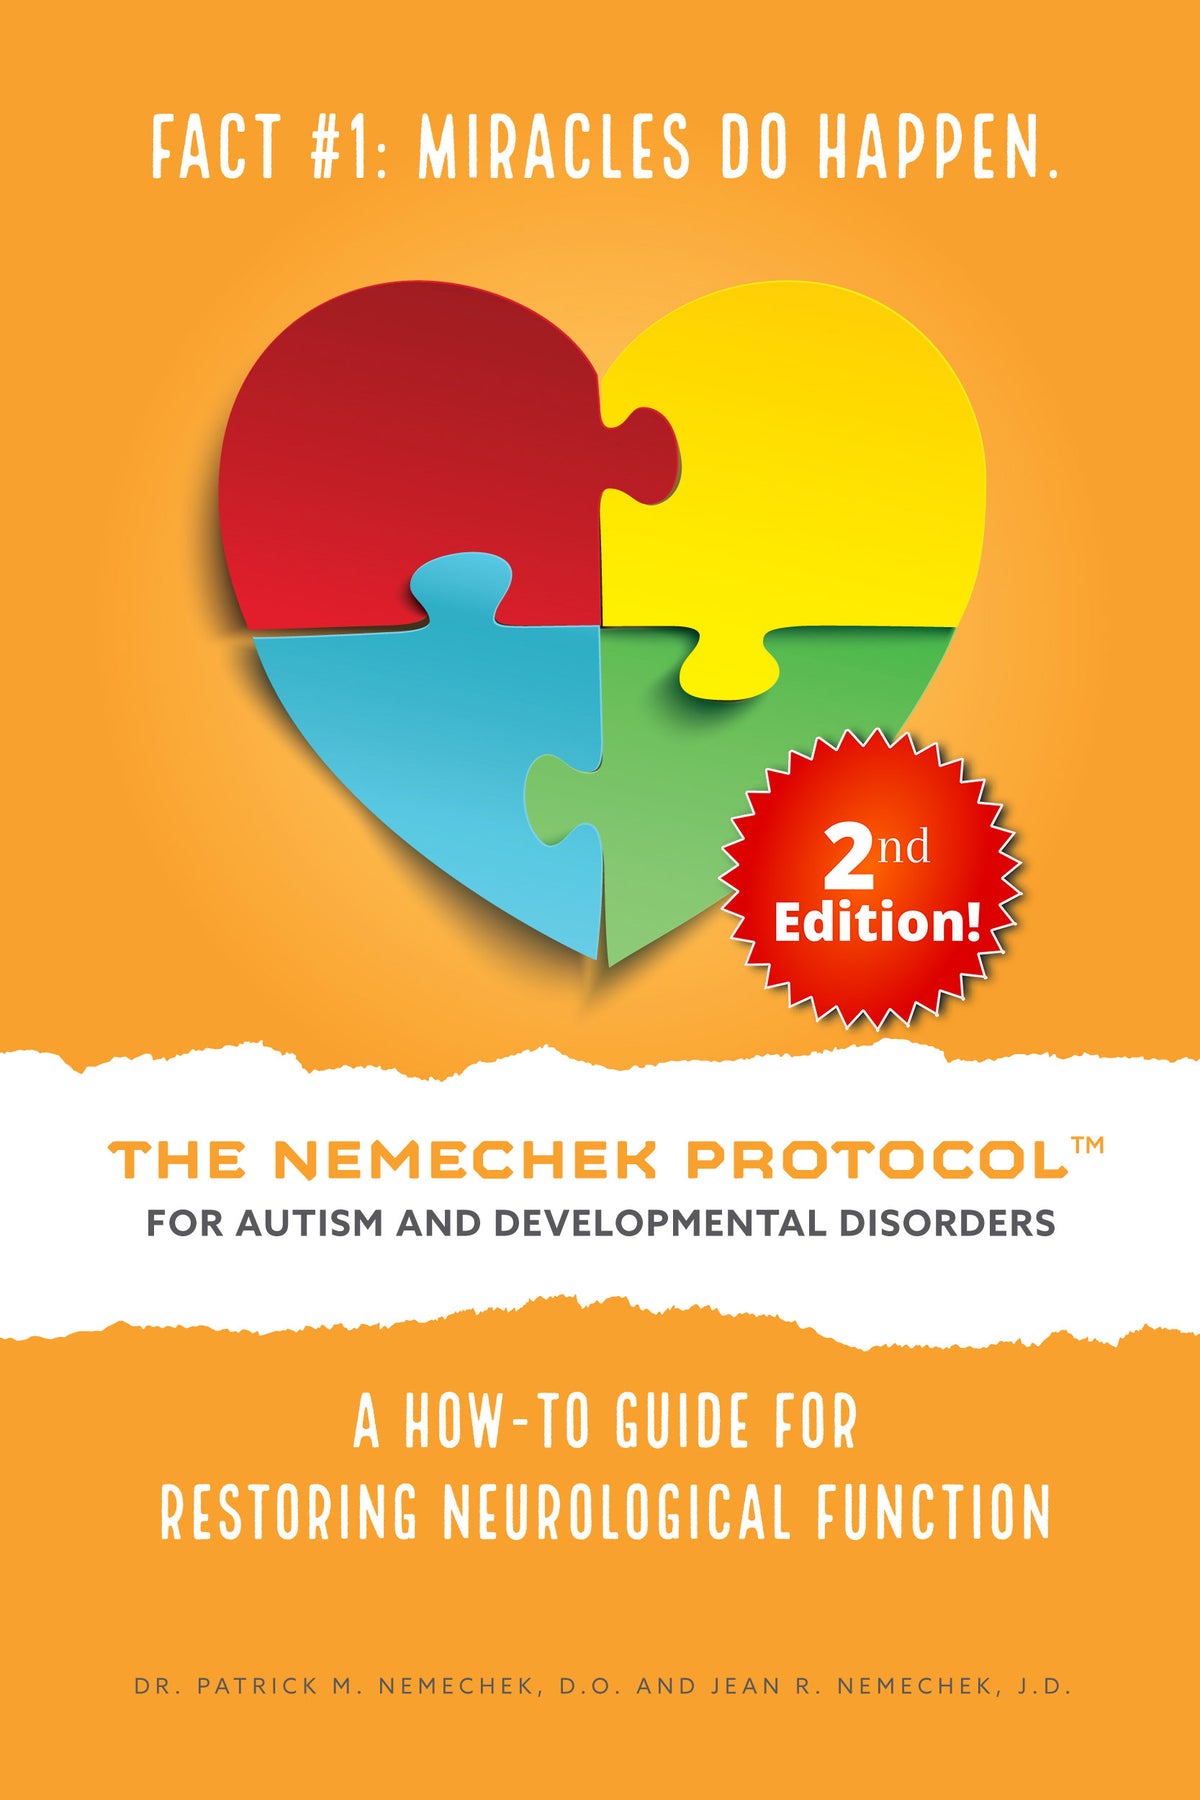 Venta de oficina - 2.ª edición, El protocolo Nemechek para el autismo y los trastornos del desarrollo